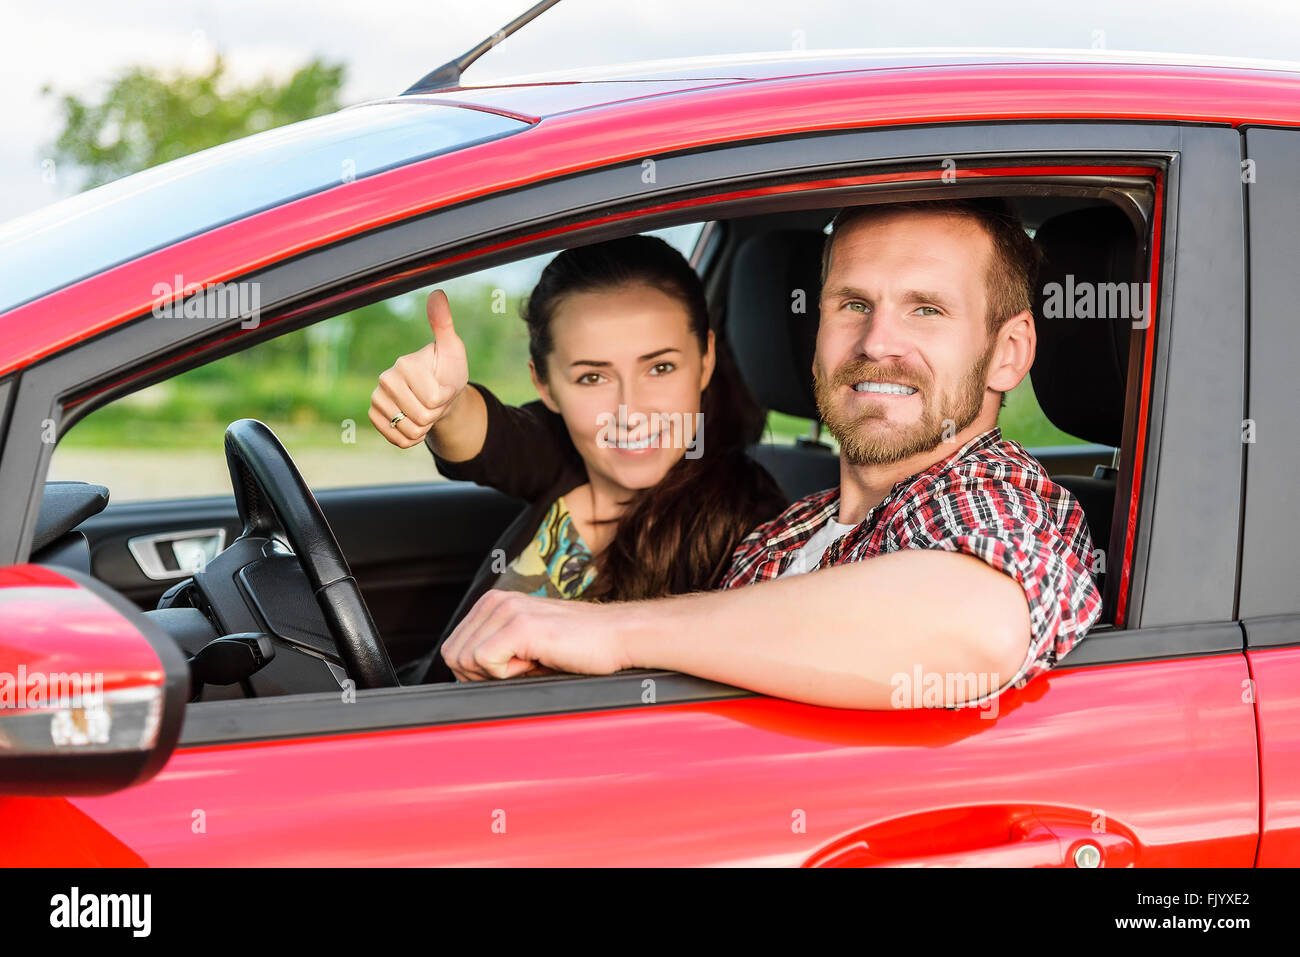 Zwei junge, lächelnde Menschen in einem roten Auto Stockfoto